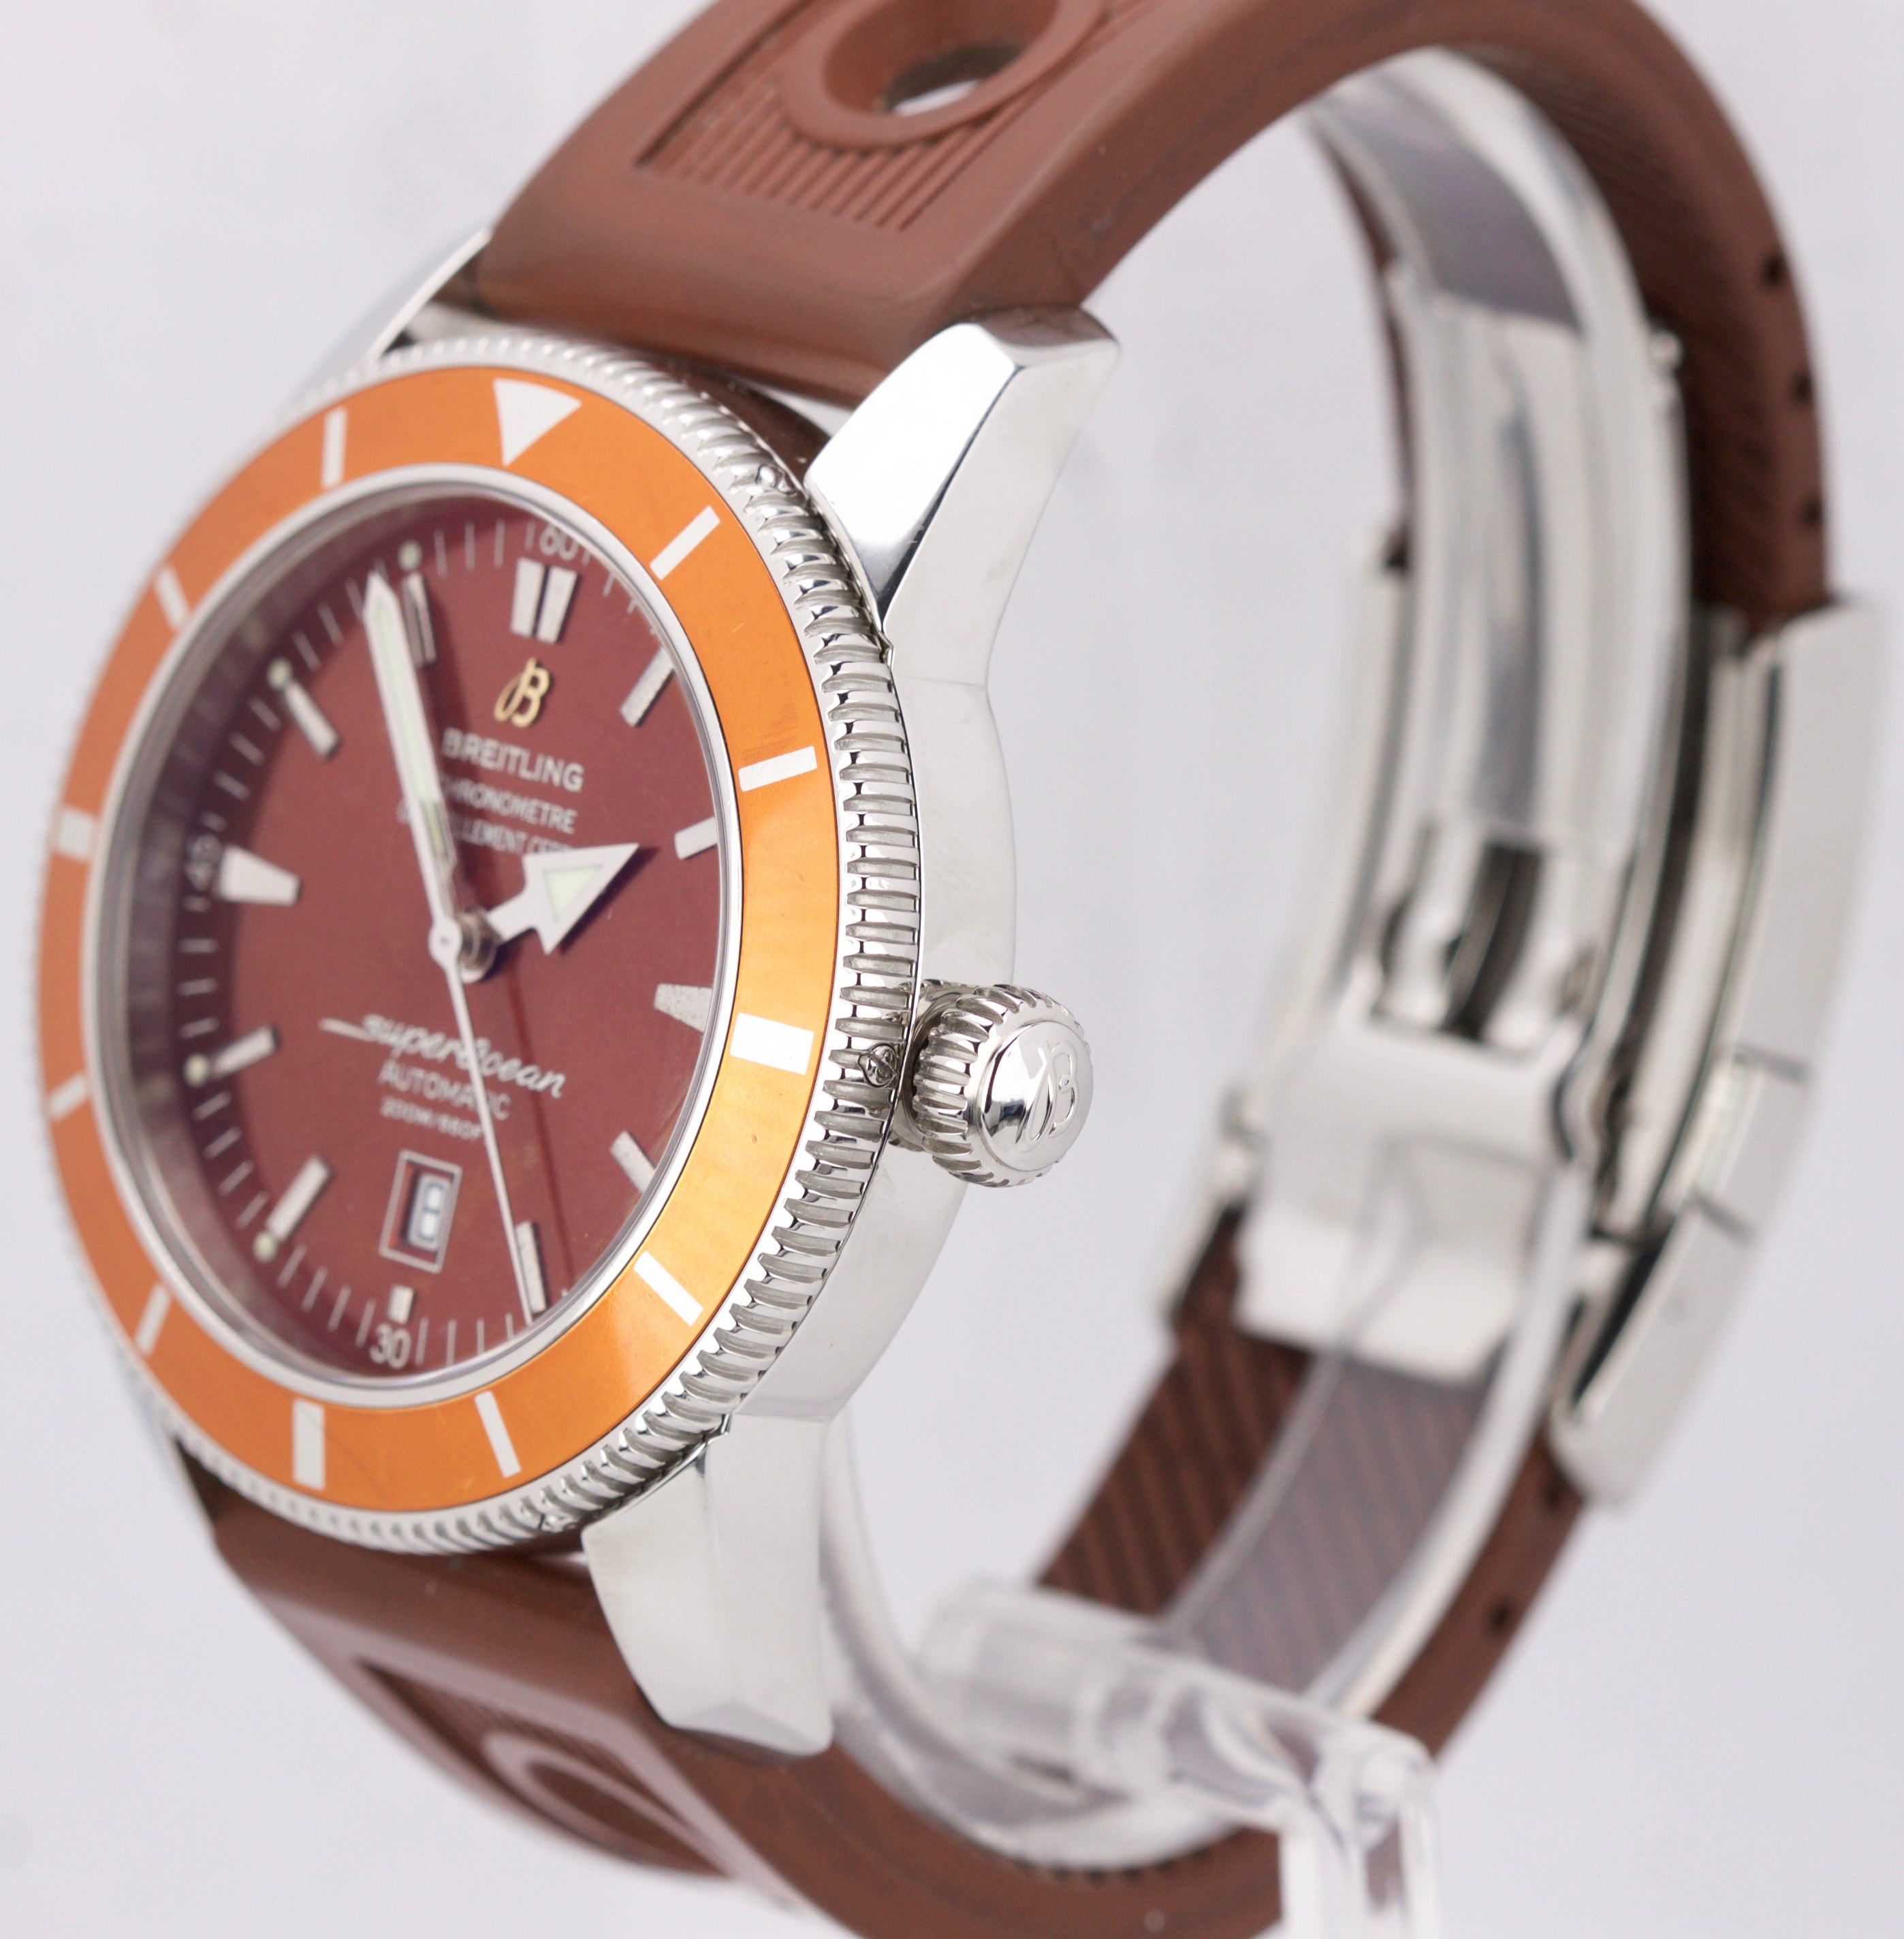 Breitling SuperOcean Heritage 46 Orange Bronze A17320 46mm Steel Swiss Watch